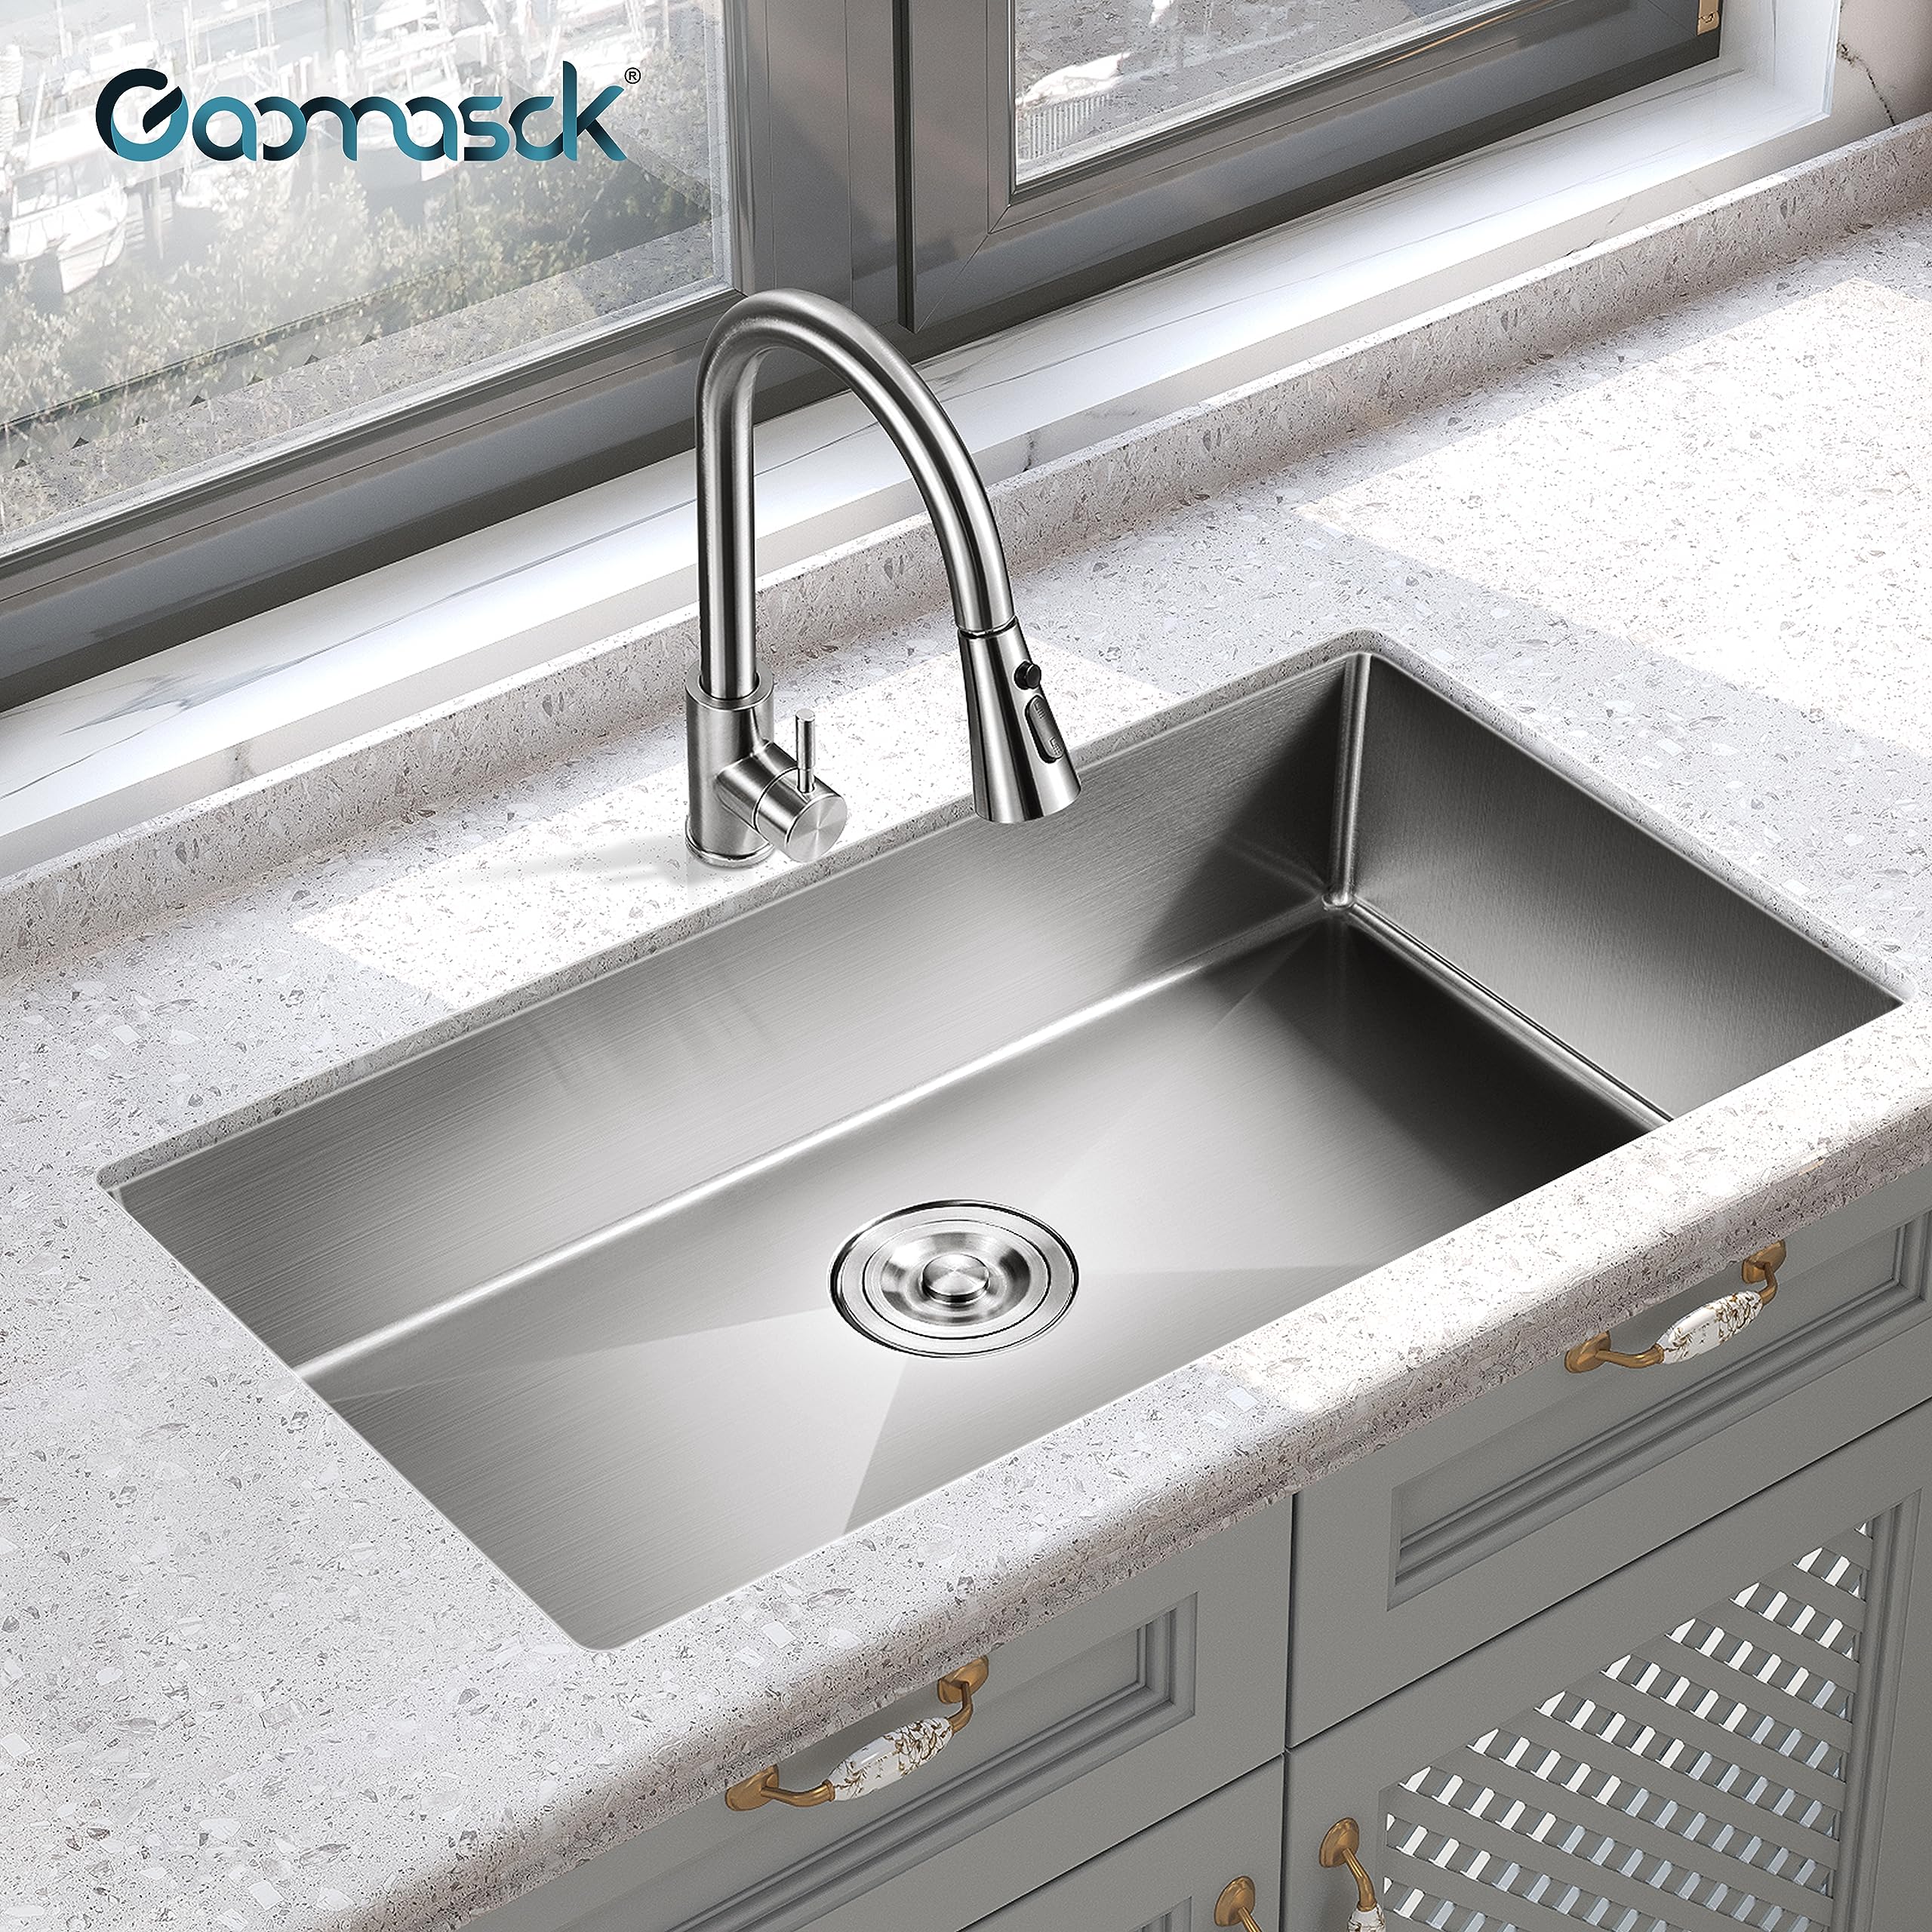 Gaomasck Nano Kitchen Sink,30 Inch Undermount Sink,Single Bowl Kitchen Sink,16 Gauge Stainless Steel Sink,Standard High-end Handmade For Kitchen Sink,2 Item Kitchen Sink Set